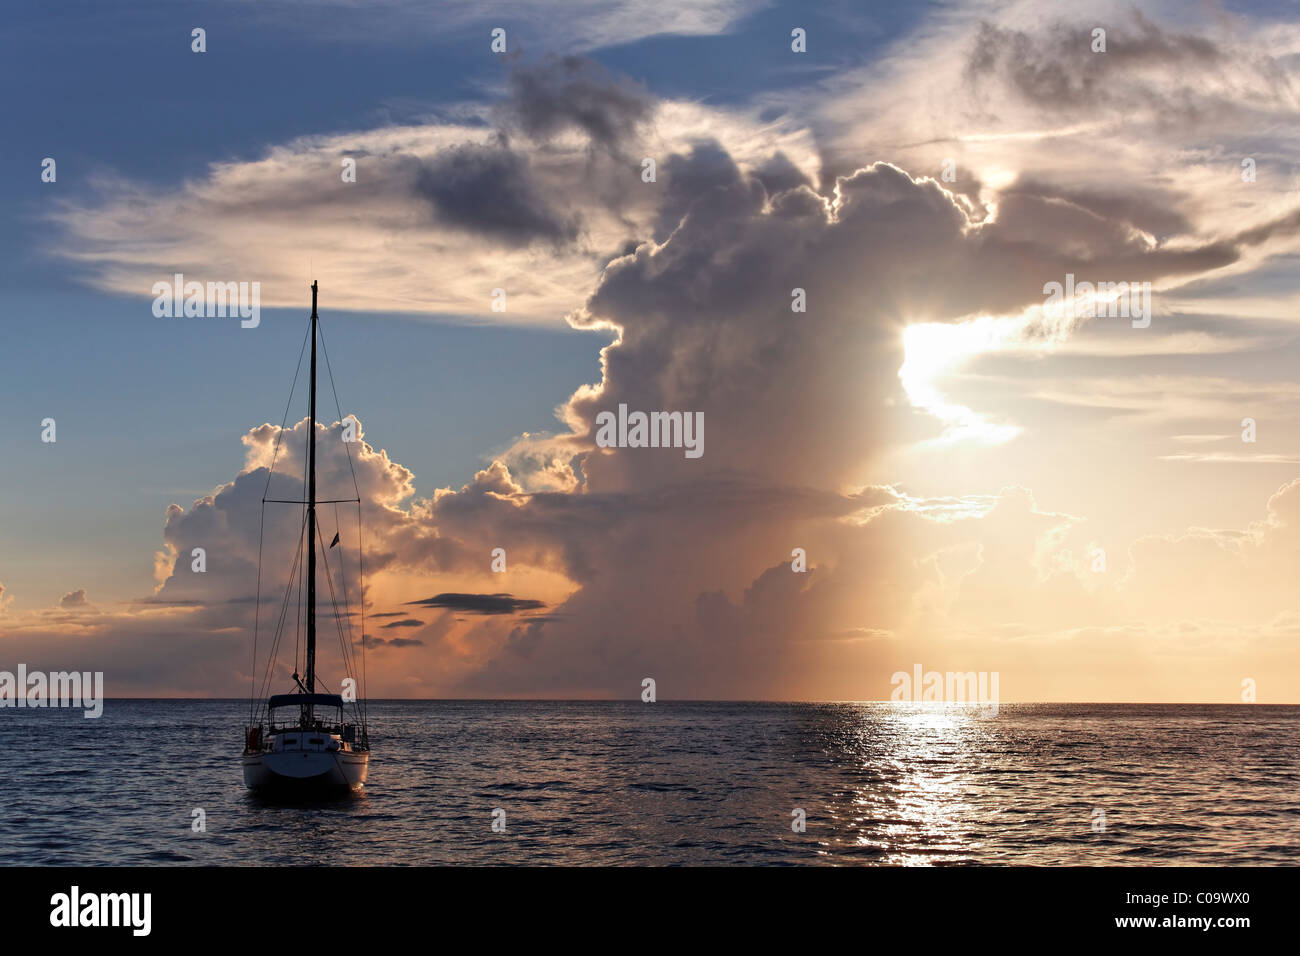 Segelboot auf Anker, große Gewitterwolke, Sonnenuntergang, Horizont, Meer, St. Lucia, LCA, Windward-Inseln, kleine Antillen, Karibik Stockfoto